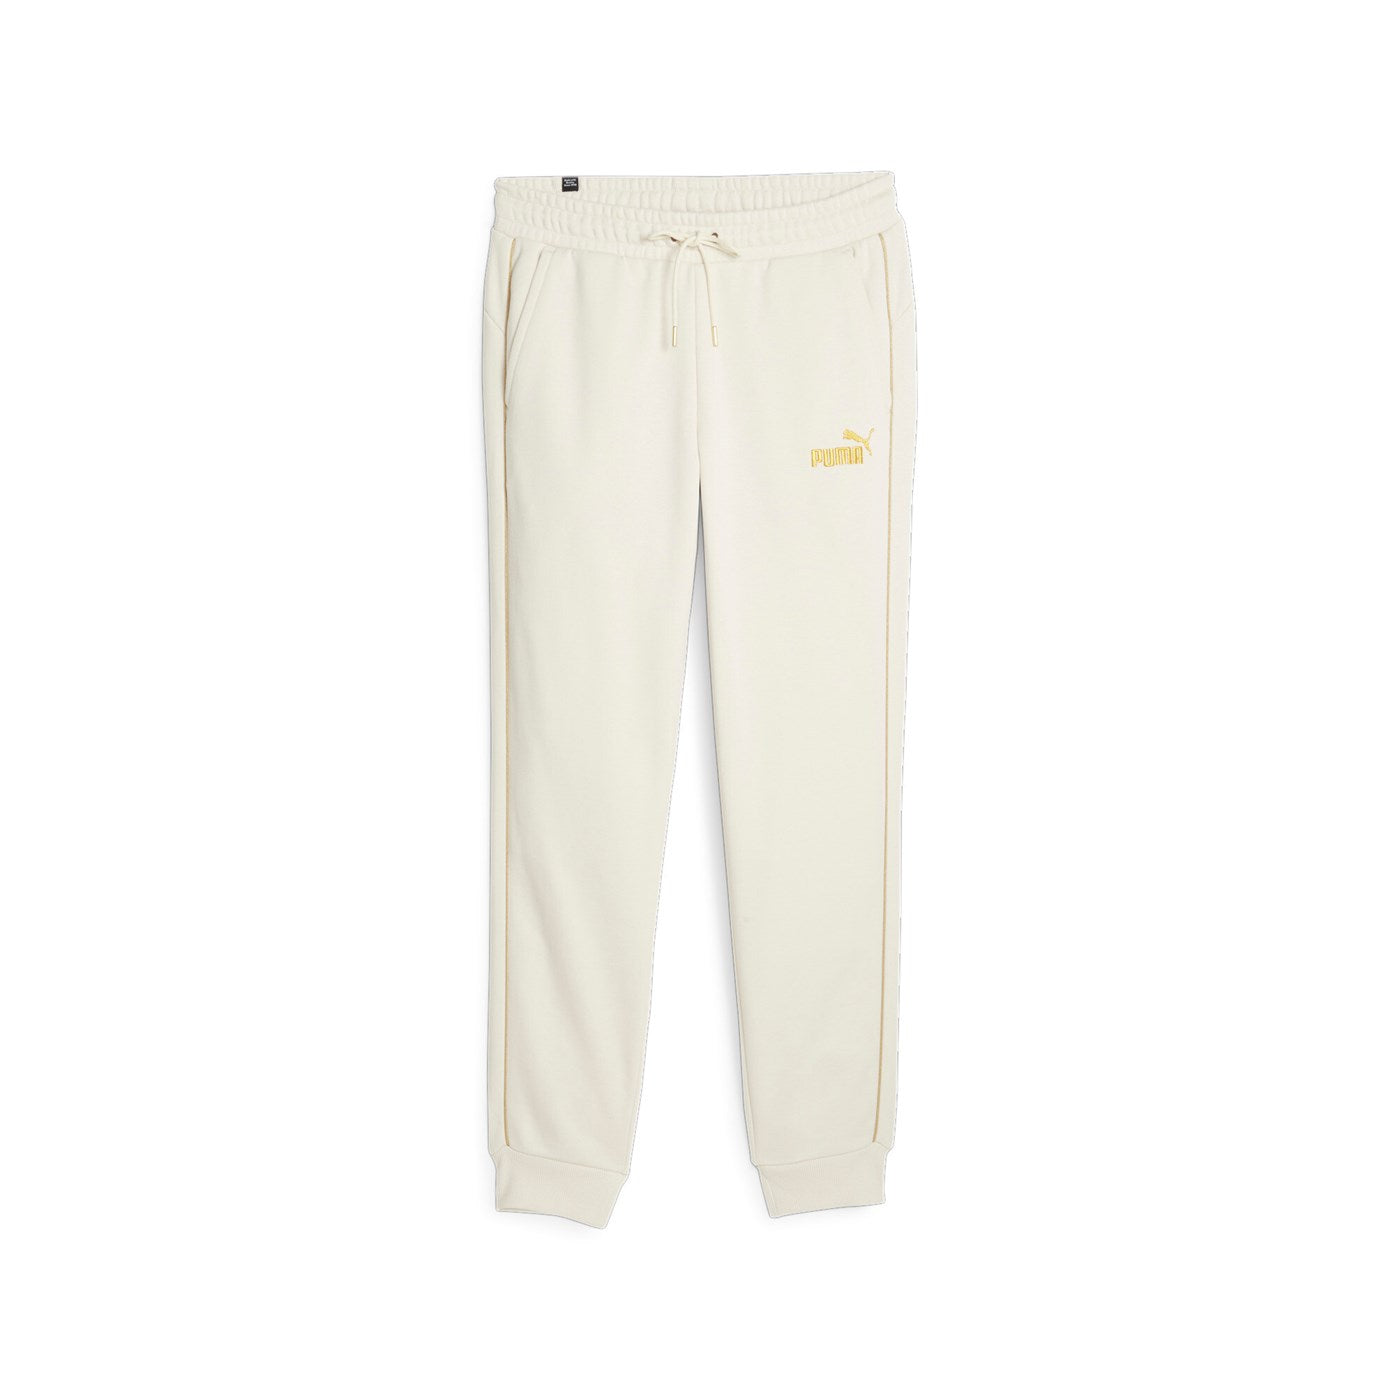 Puma Pantalone sportivo da uomo con polsino Ess+ Minimal Gold 680306 87 beige chiaro